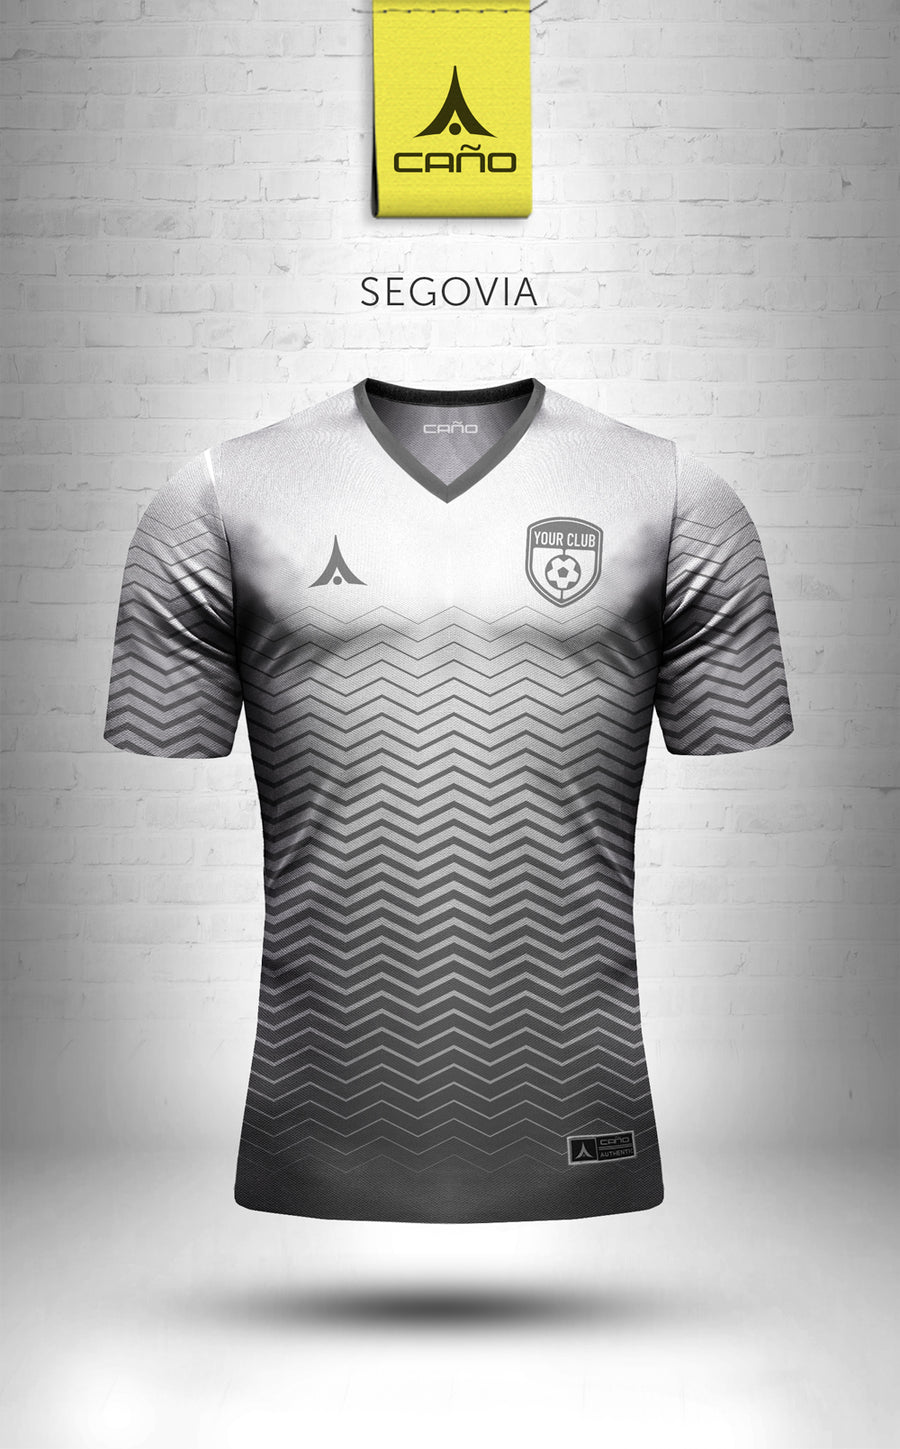 Segovia in white